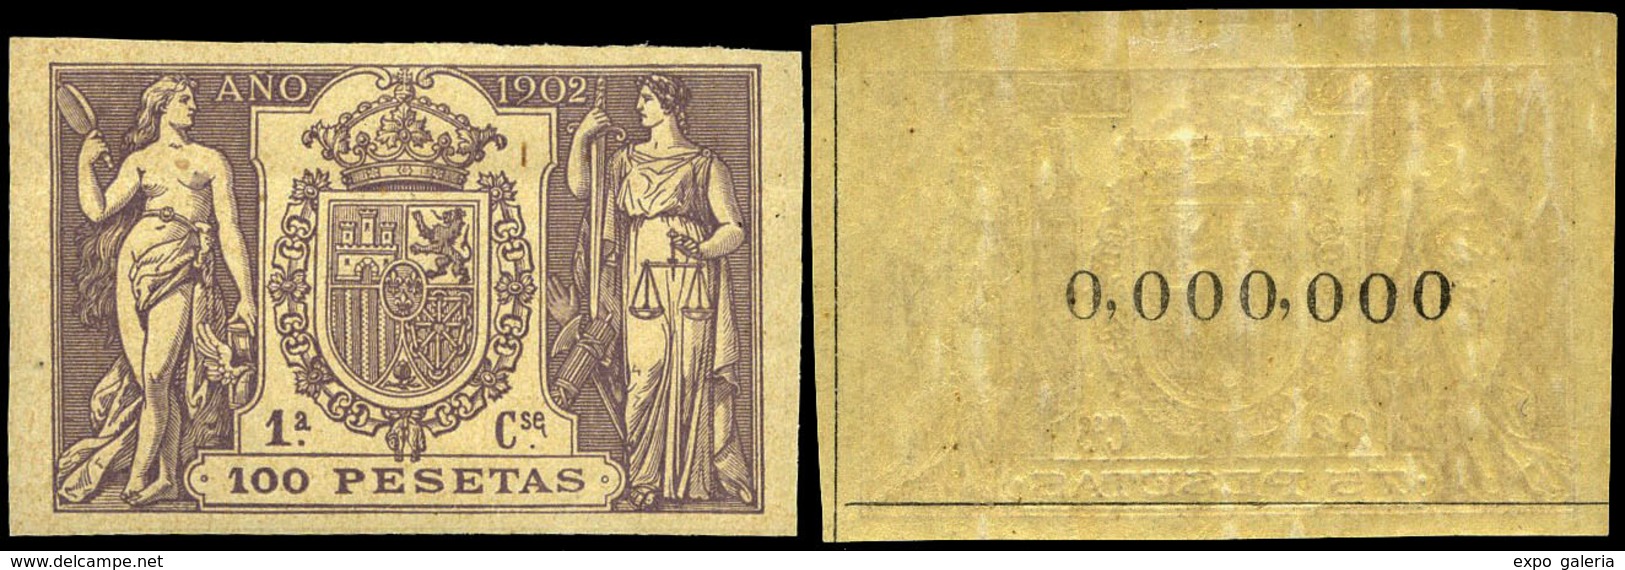 Alemany 499/509 - 1902. Pólizas. 11 Valores. Serie Completa Con Numeración 000.000 Al Dorso. Goma Original - Fiscale Zegels